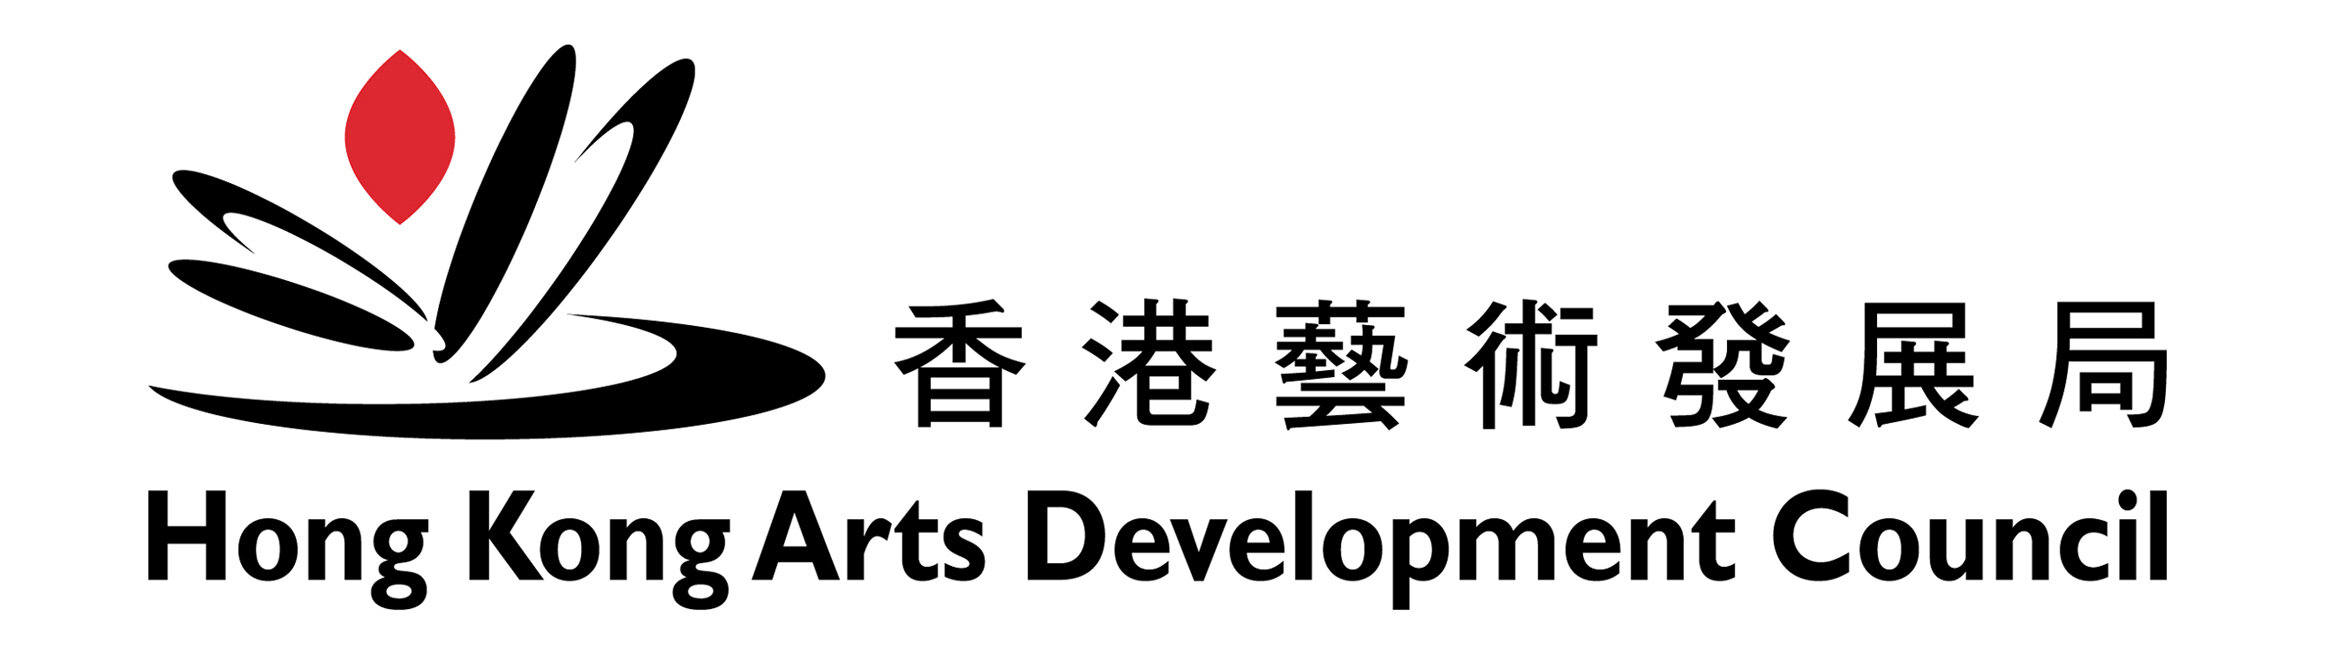 Hong Kong Arts Development Council.jpg